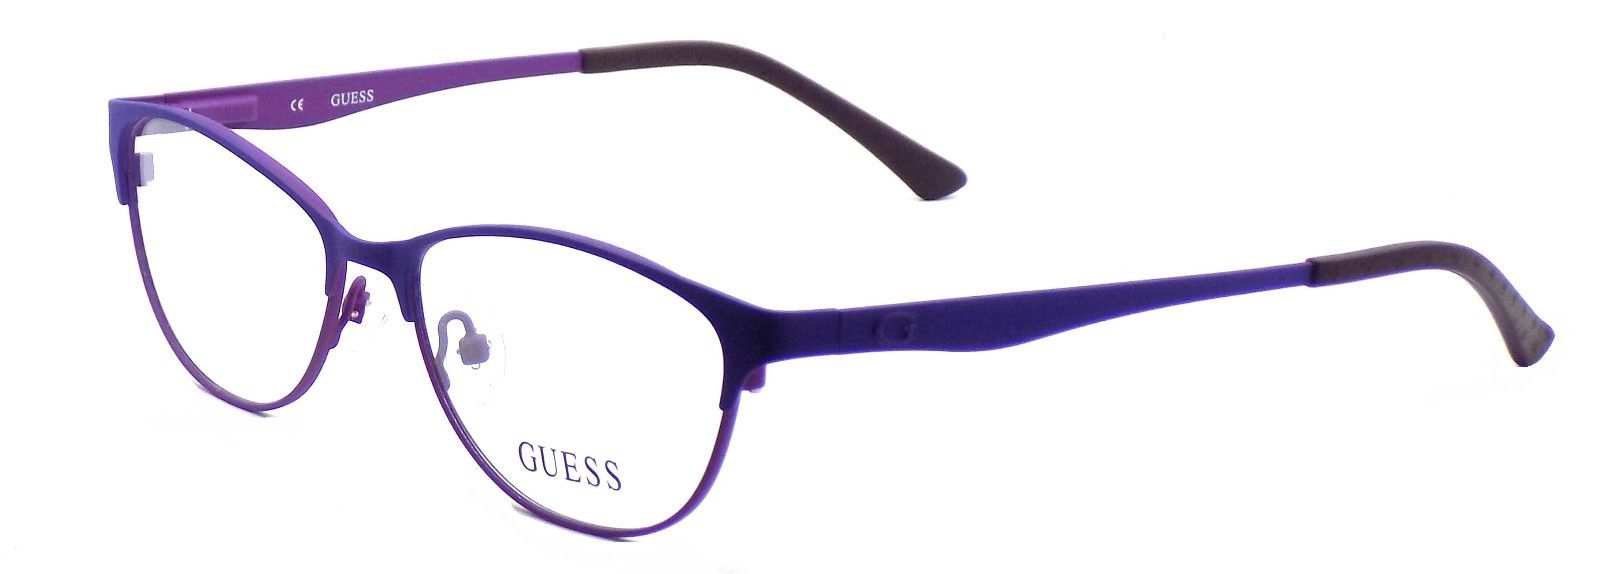 1-GUESS GU2504 079 Women's Eyeglasses Frames 53-15-135 Matte Lilac + CASE-664689697632-IKSpecs